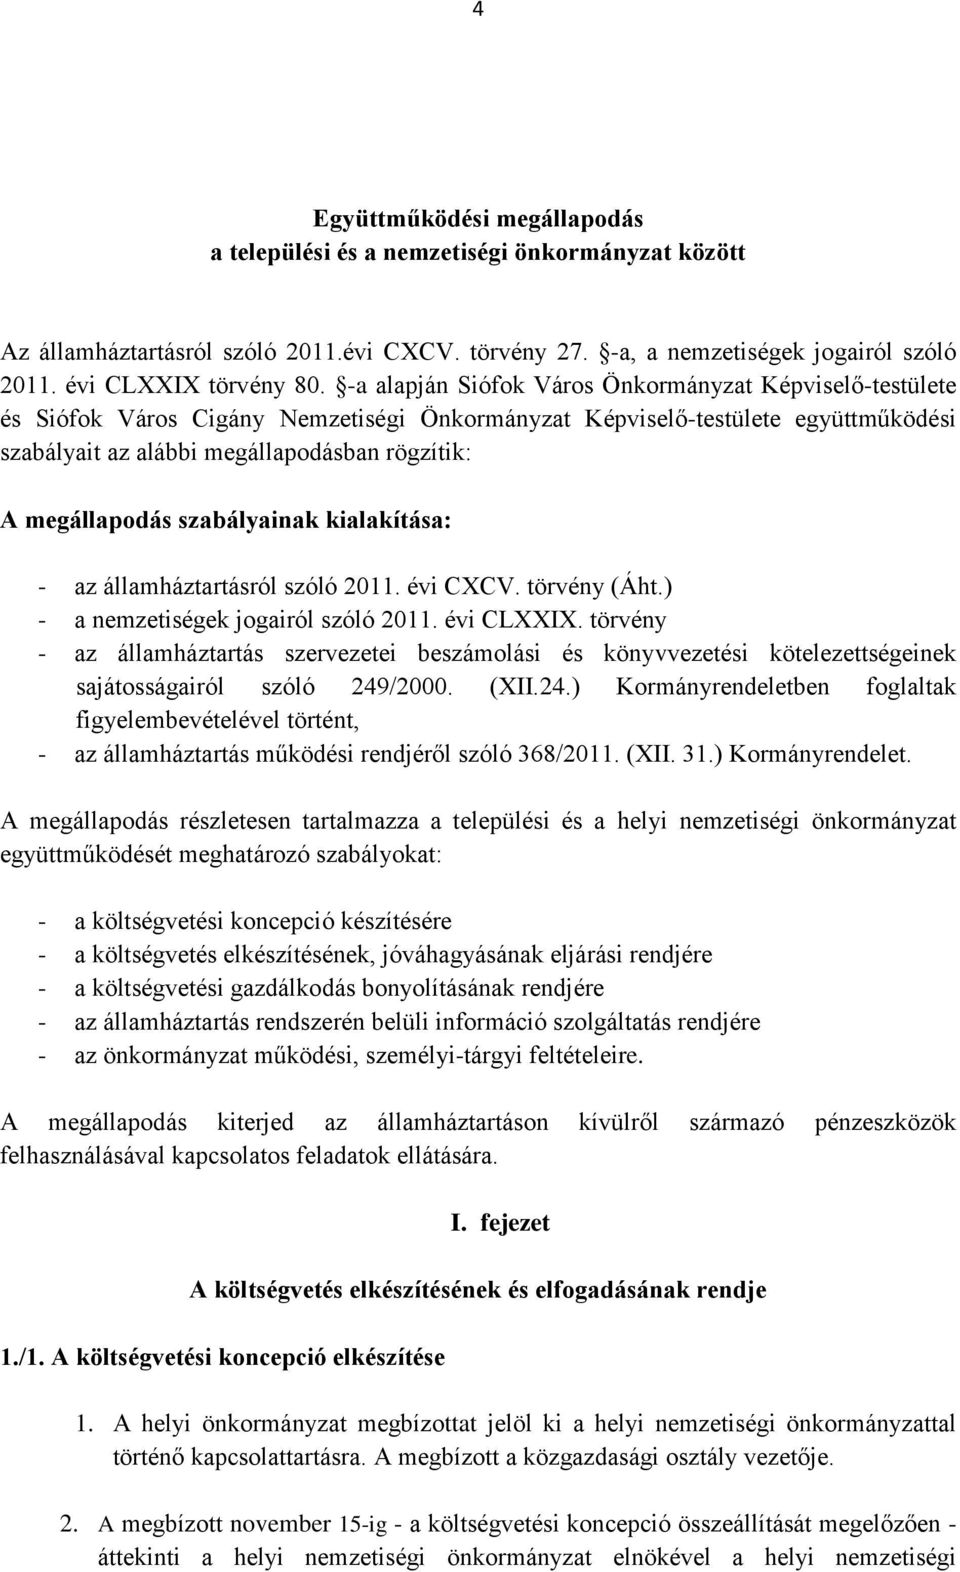 megállapodás szabályainak kialakítása: - az államháztartásról szóló 2011. évi CXCV. törvény (Áht.) - a nemzetiségek jogairól szóló 2011. évi CLXXIX.